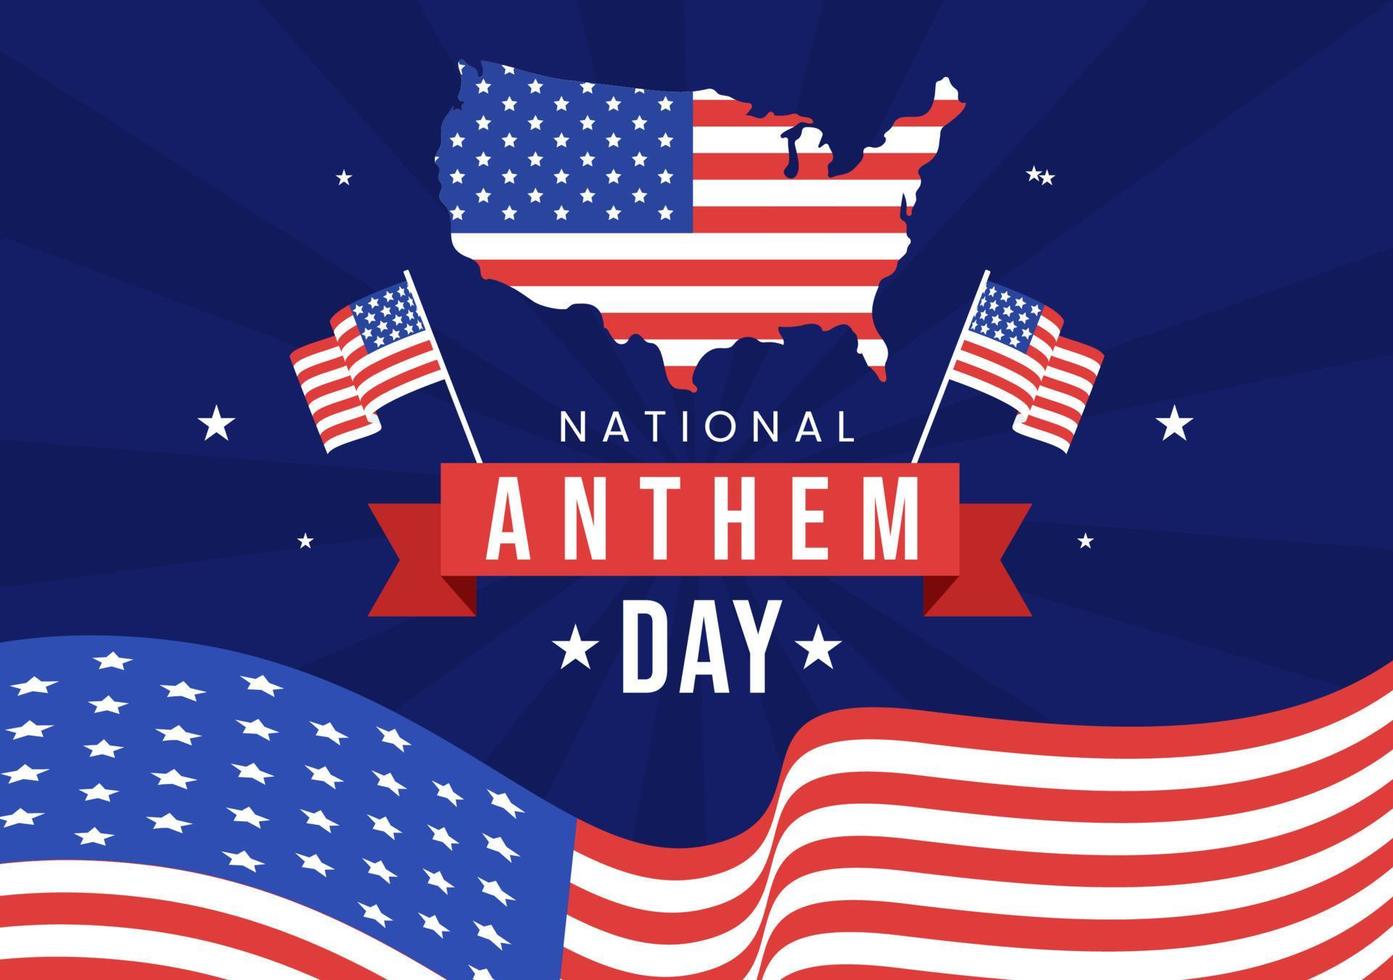 illustration de la journée de l'hymne national le 3 mars avec le drapeau des états-unis d'amérique pour la bannière web ou la page de destination dans un modèle dessiné à la main de dessin animé plat vecteur